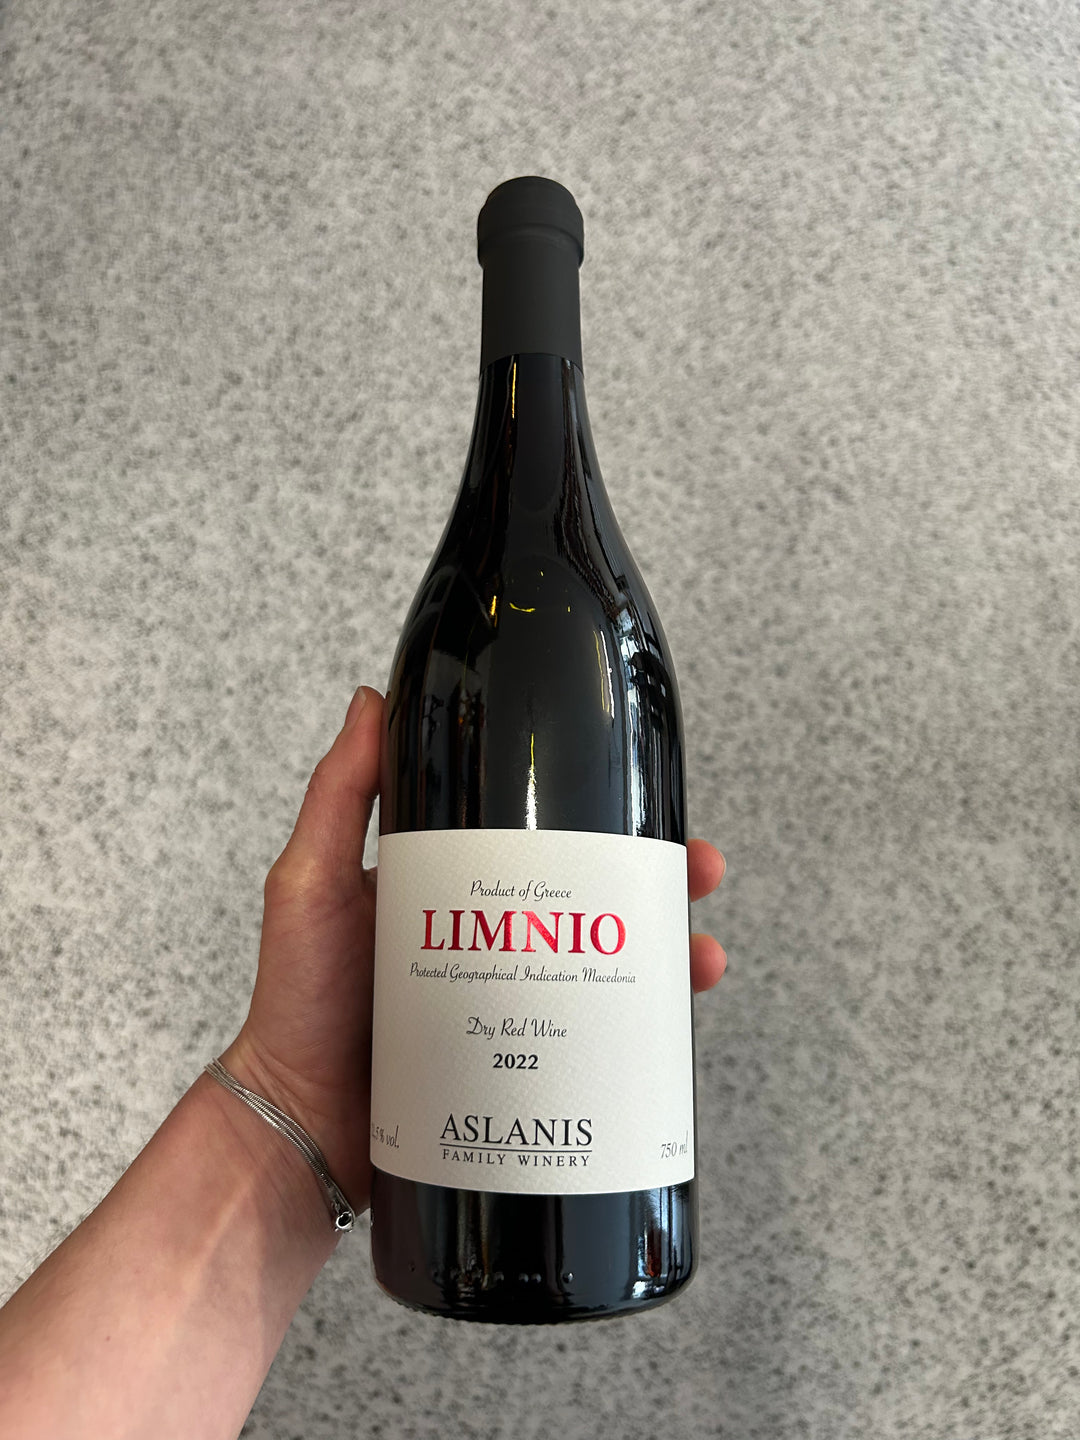 Aslanis Family Winery Limnio 2022 BIO